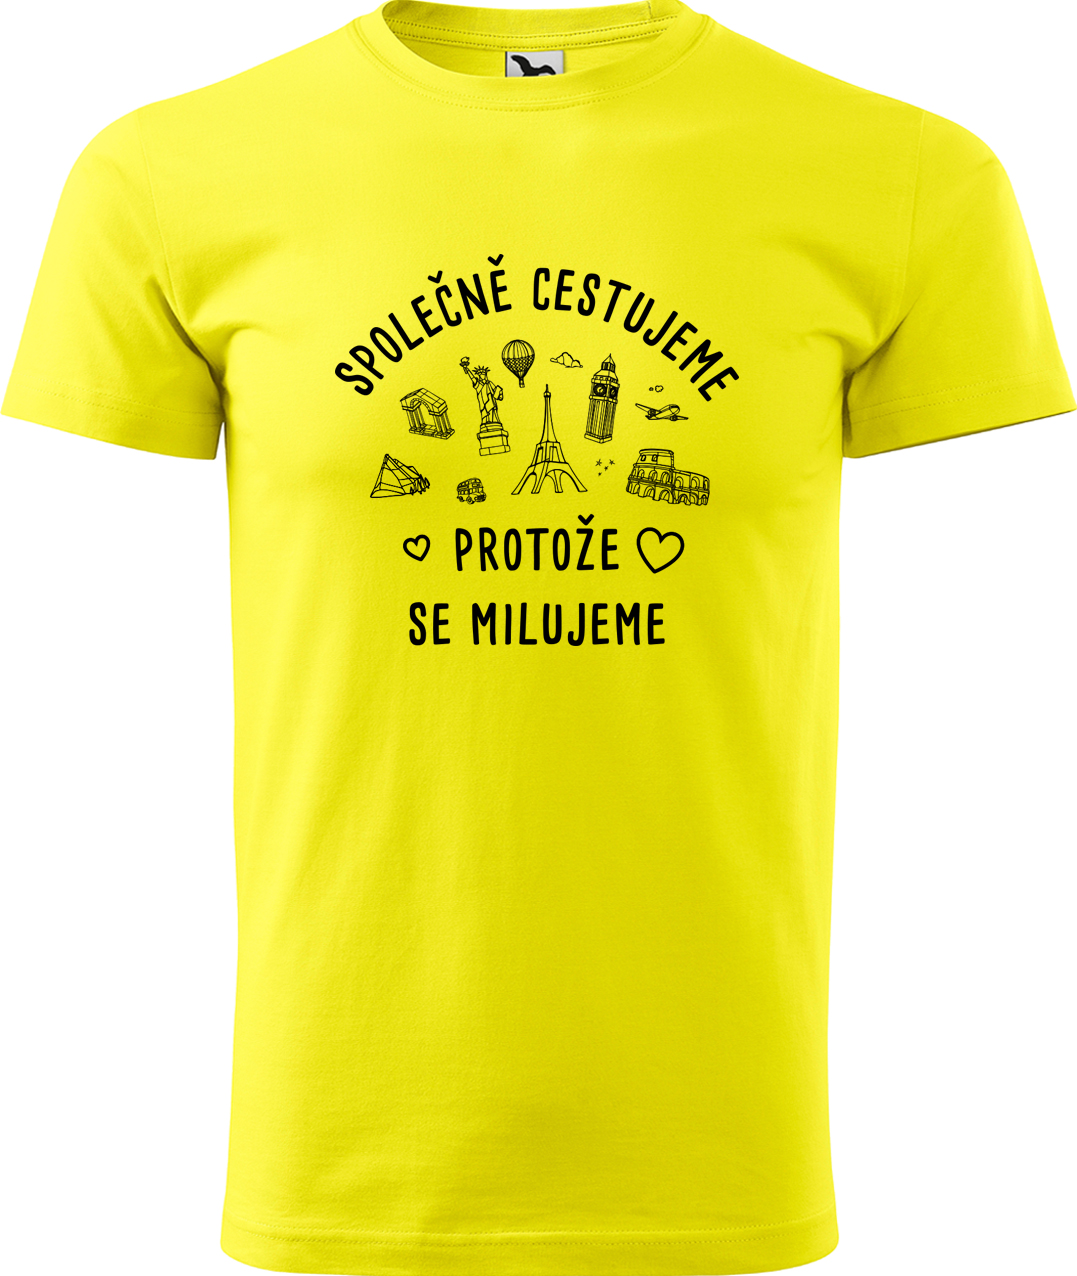 Pánské cestovatelské tričko - Společně cestujeme protože se milujeme Velikost: 3XL, Barva: Žlutá (04), Střih: pánský